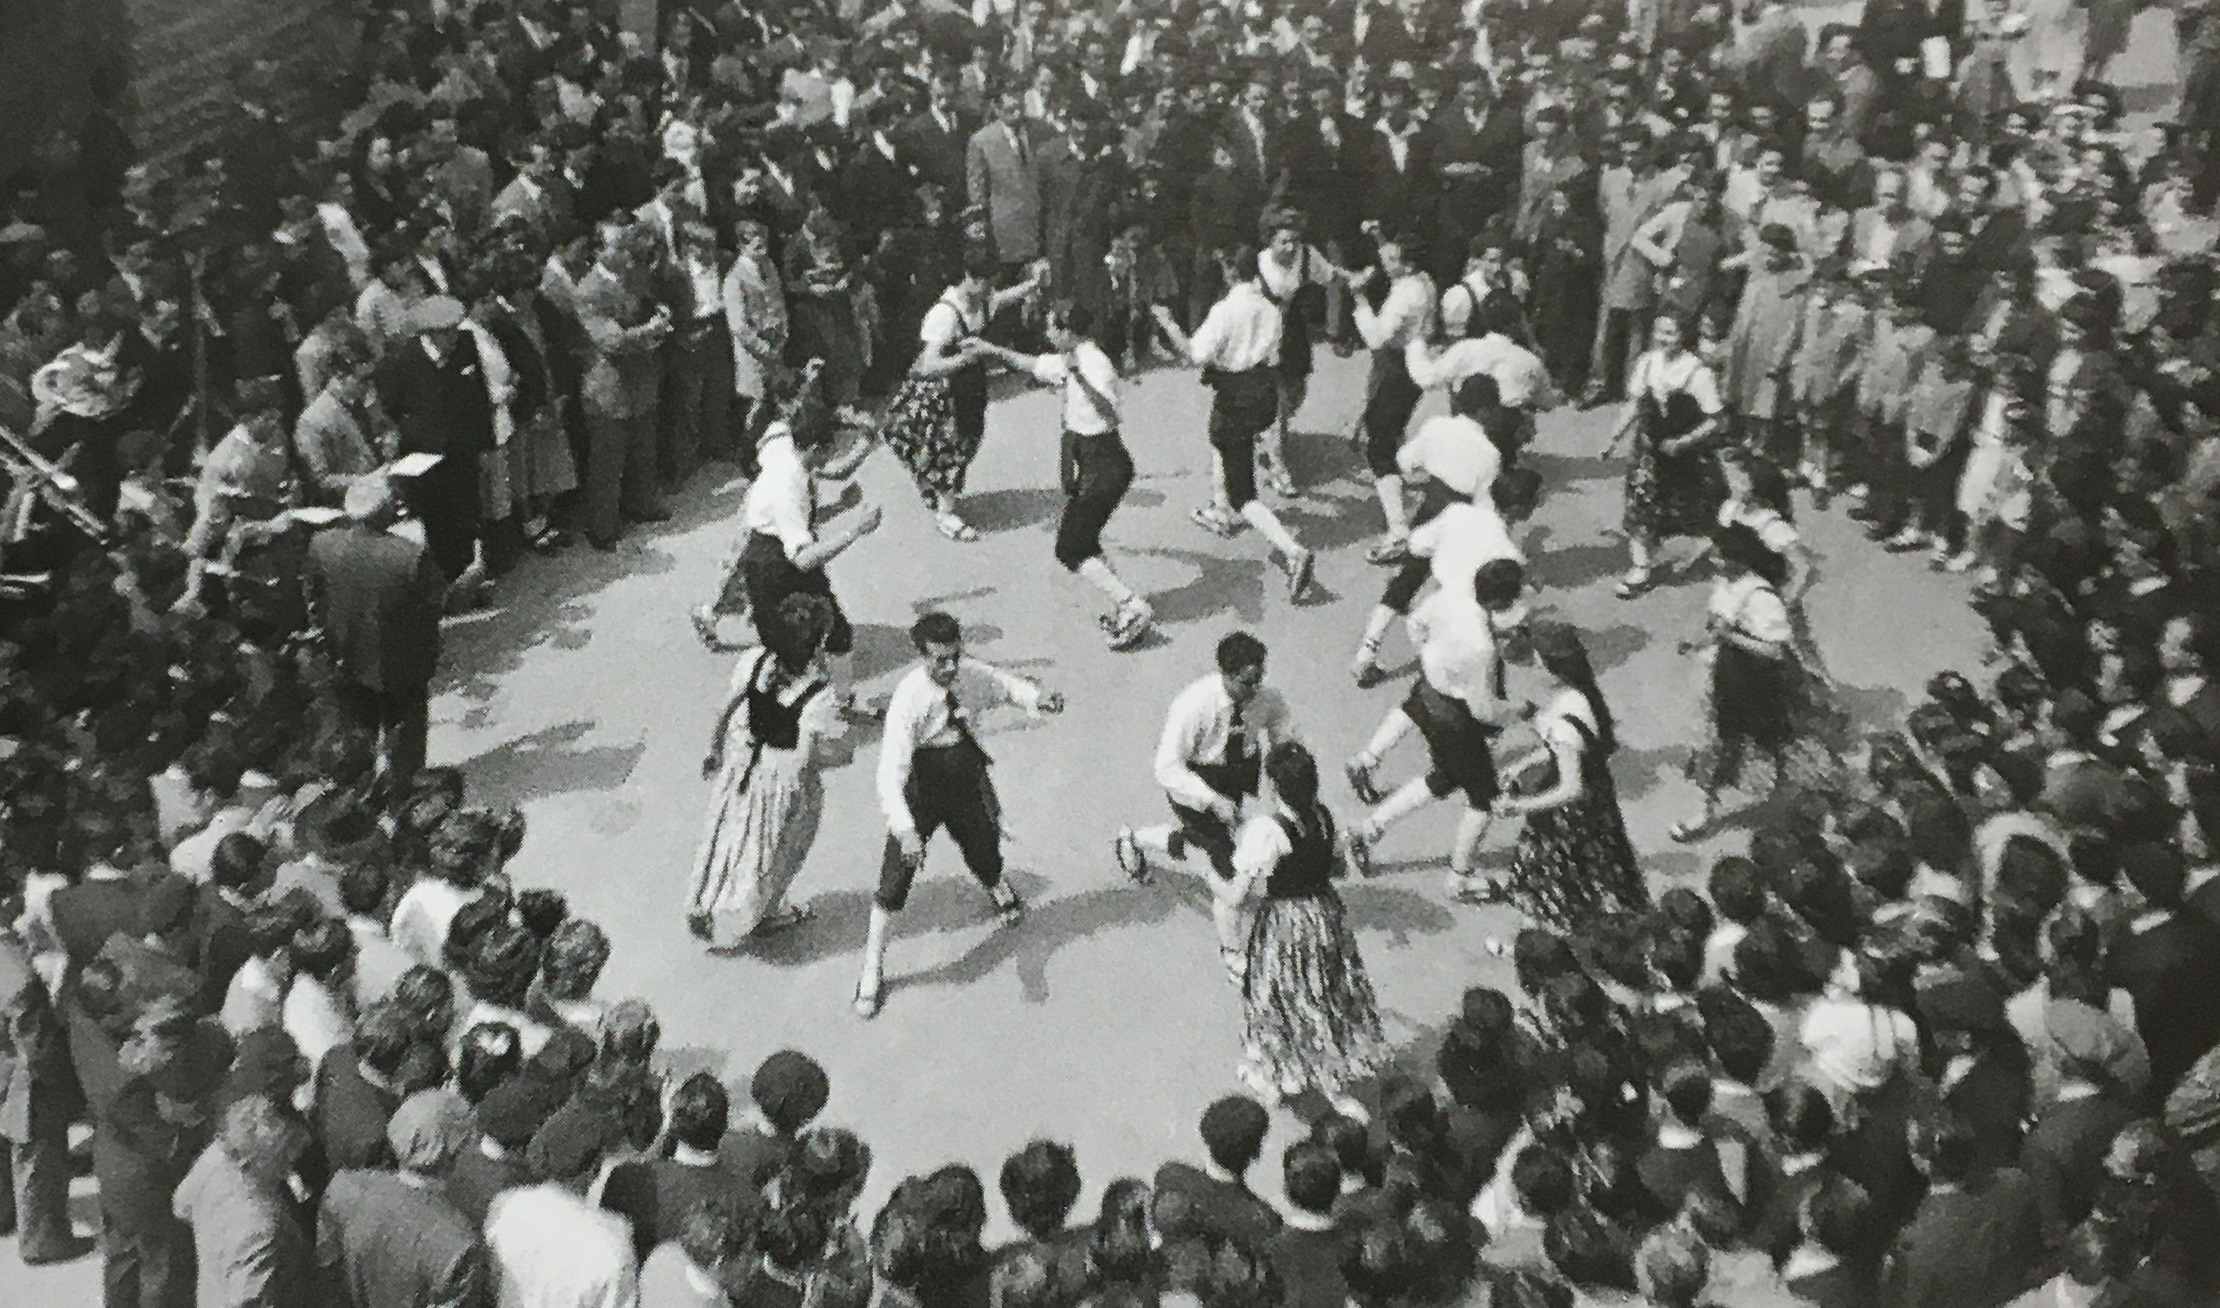 Any 1951 - Actuacio de la colla caramellaire de l'AgrupaciÃ³ ArtÃ­stica de l'Ateneu (font: llibre 'SÃºria. Els records d'un poble' de Josep Juncadella Masana i M. del Pilar GÃ³mez GÃ³mez).